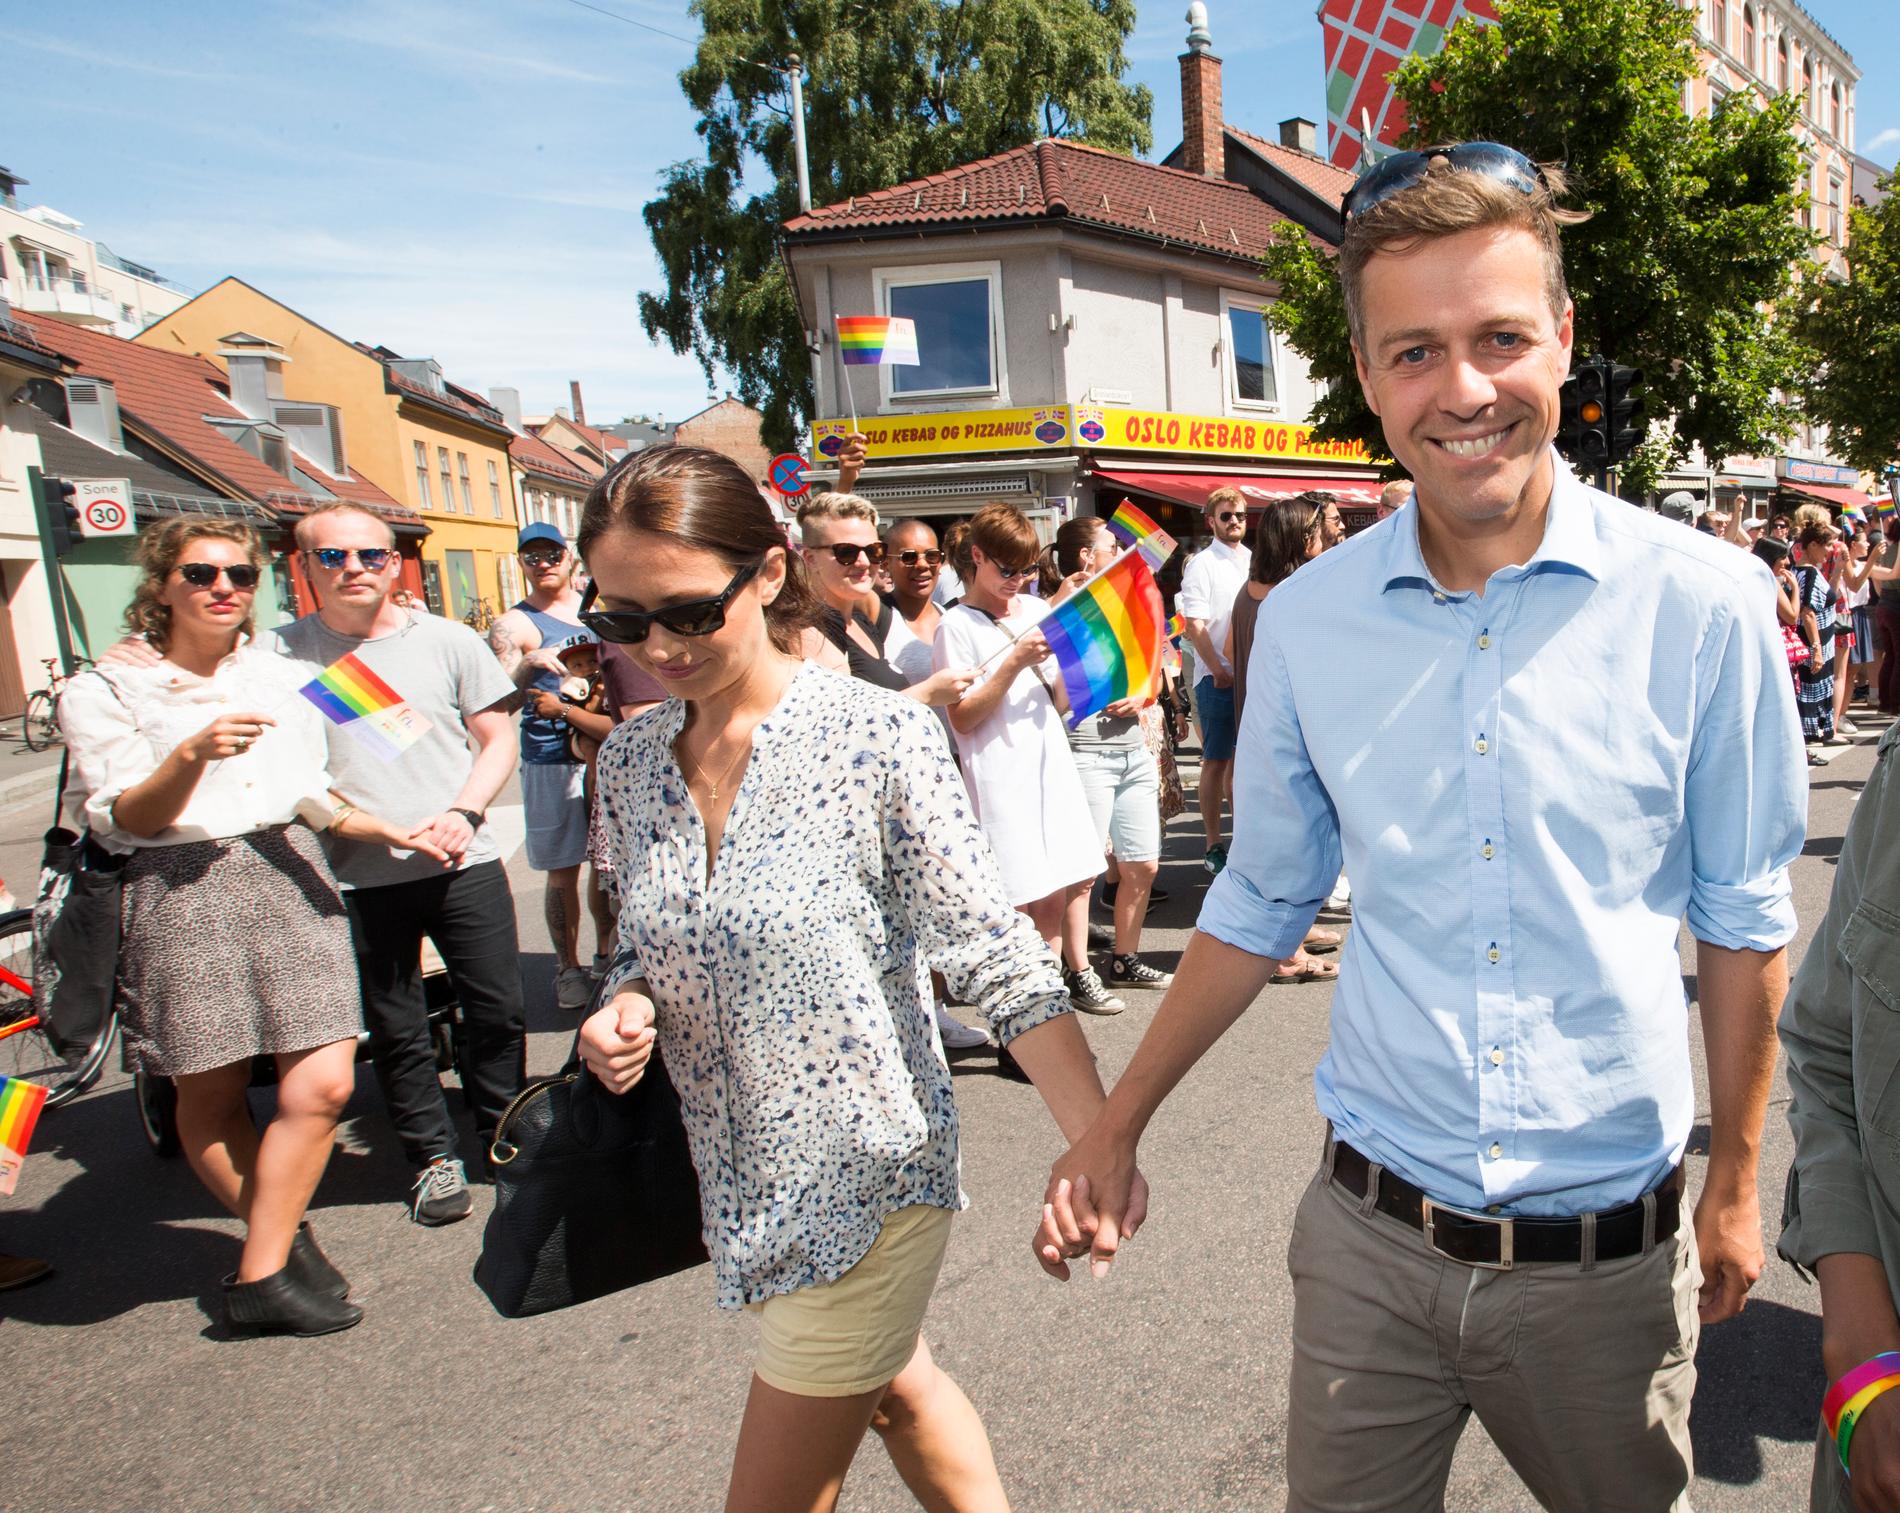 «Homofili er ikke ideologi – det er slik en er skapt», skriver tidligere KrF-leder Knut Arild Hareide. Her sammen med konen Lisa Maria i Pride-parade i 2016.